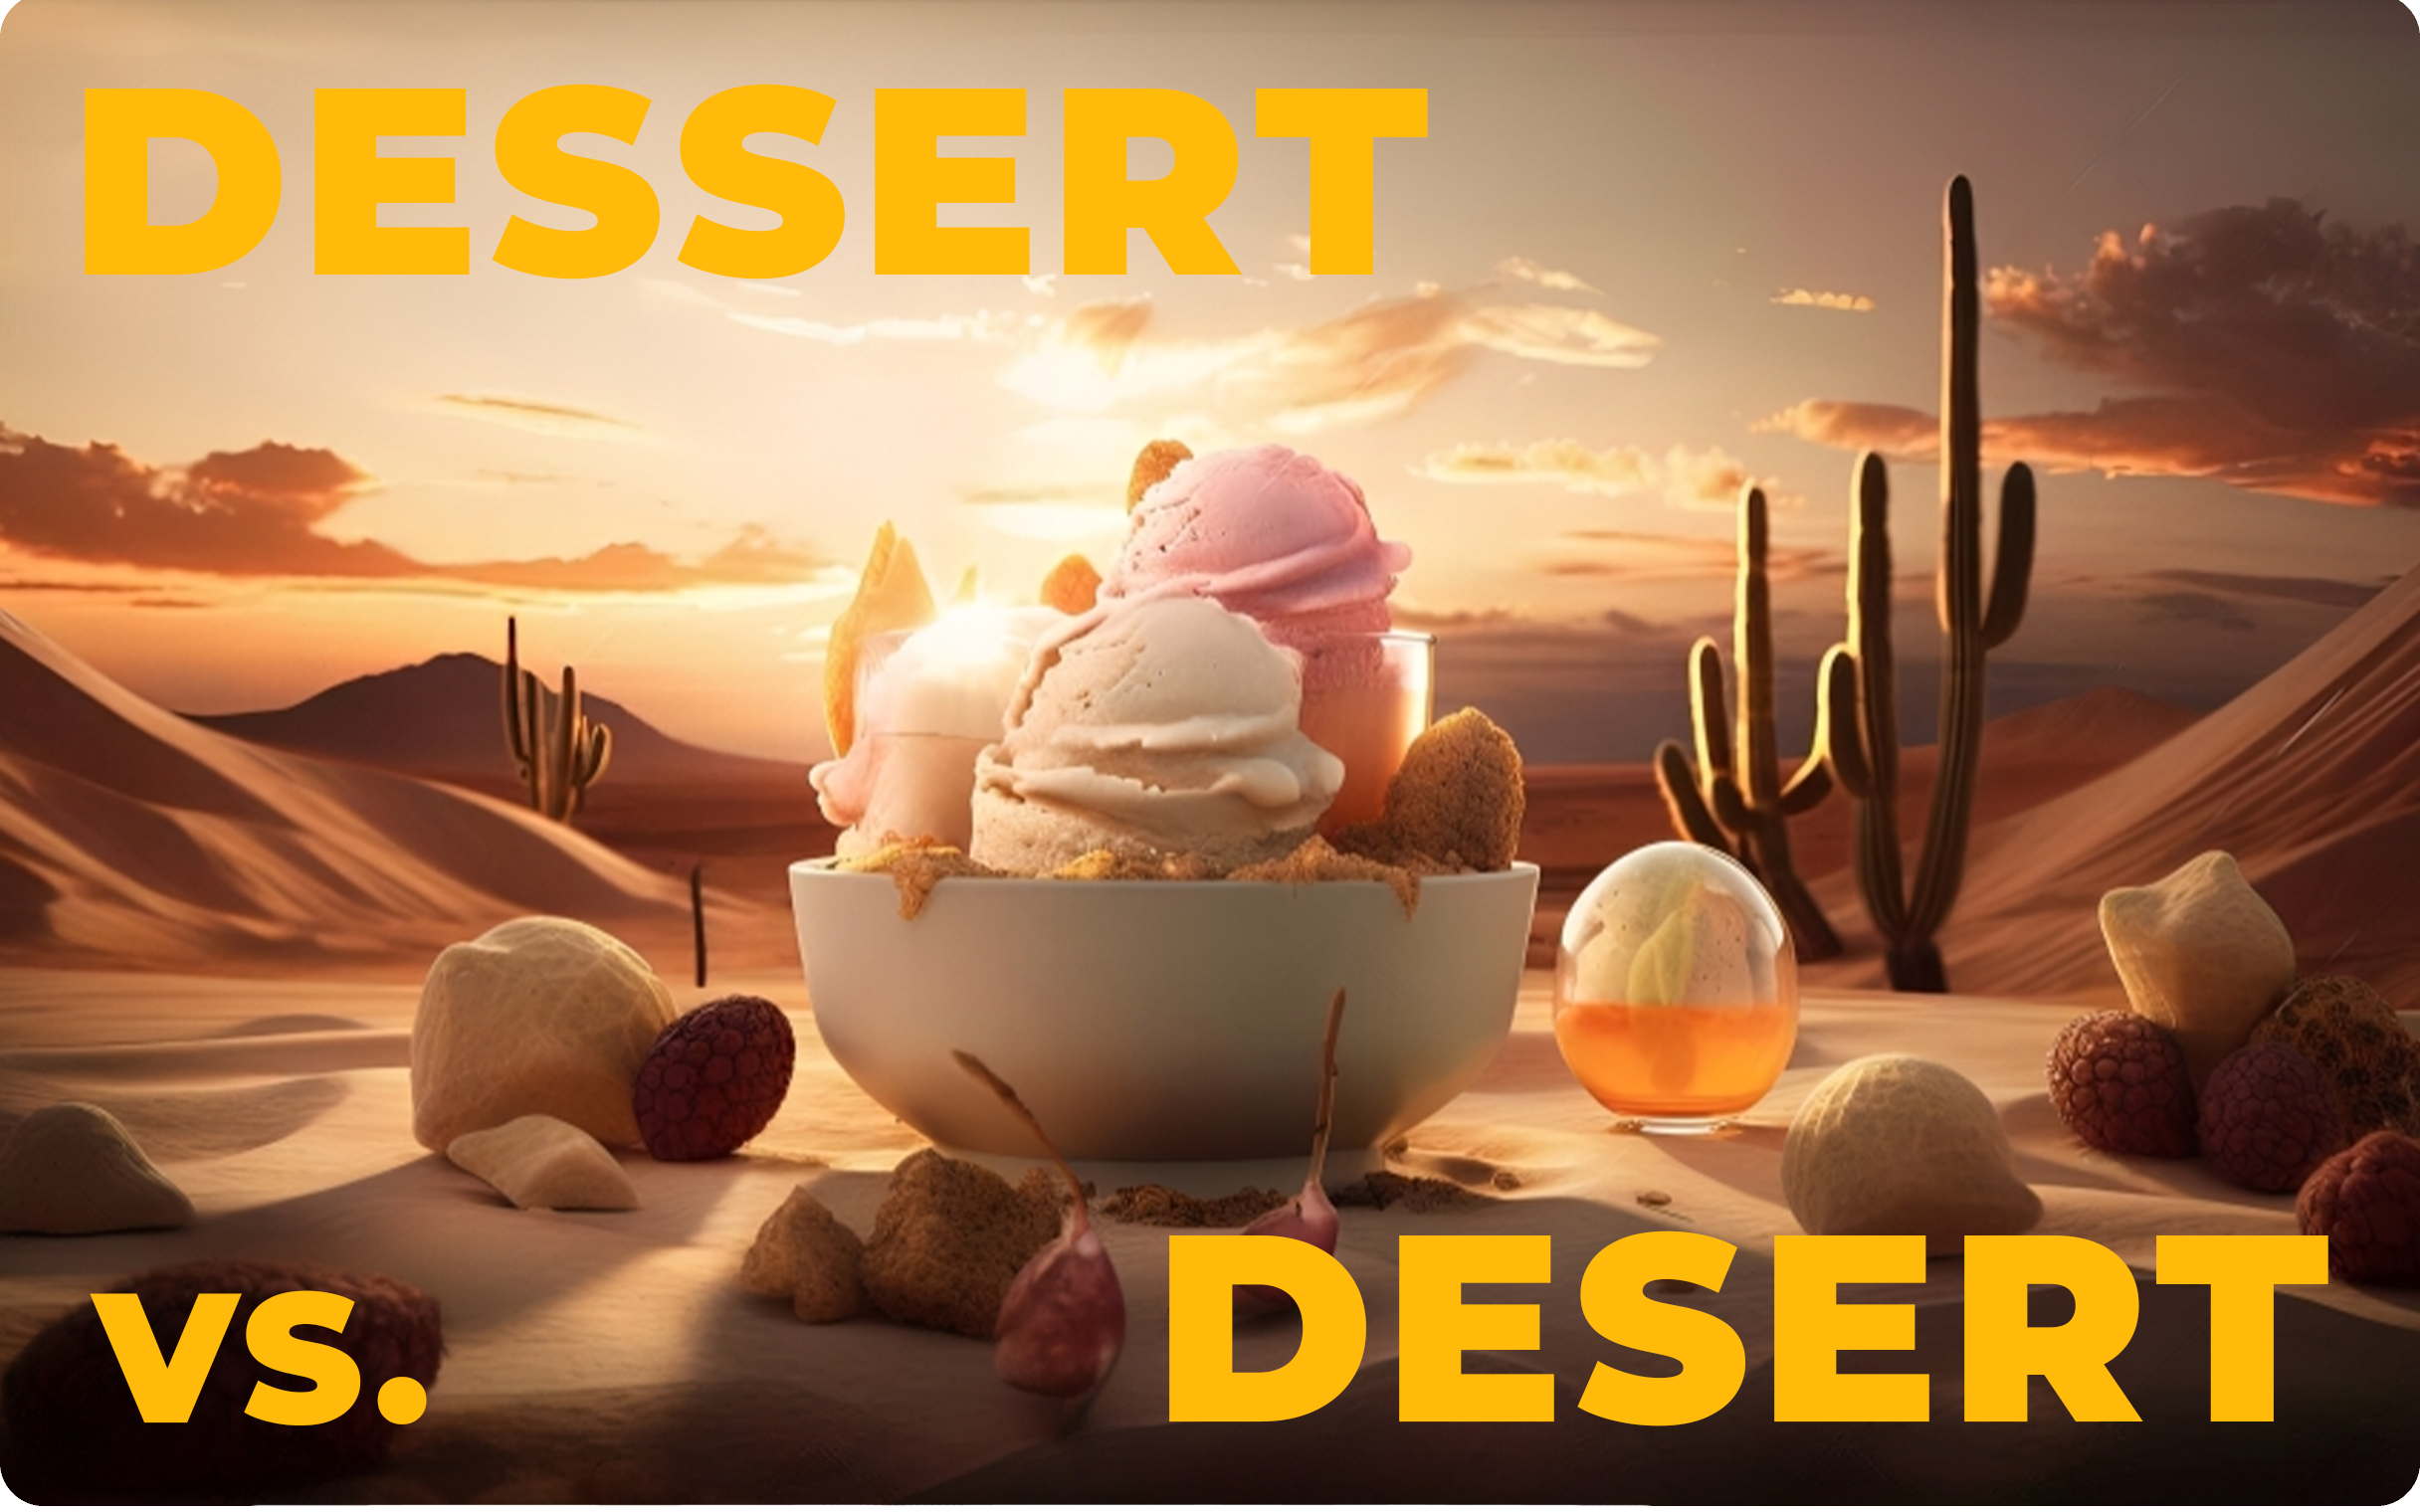 "Desert" vs. "Dessert"